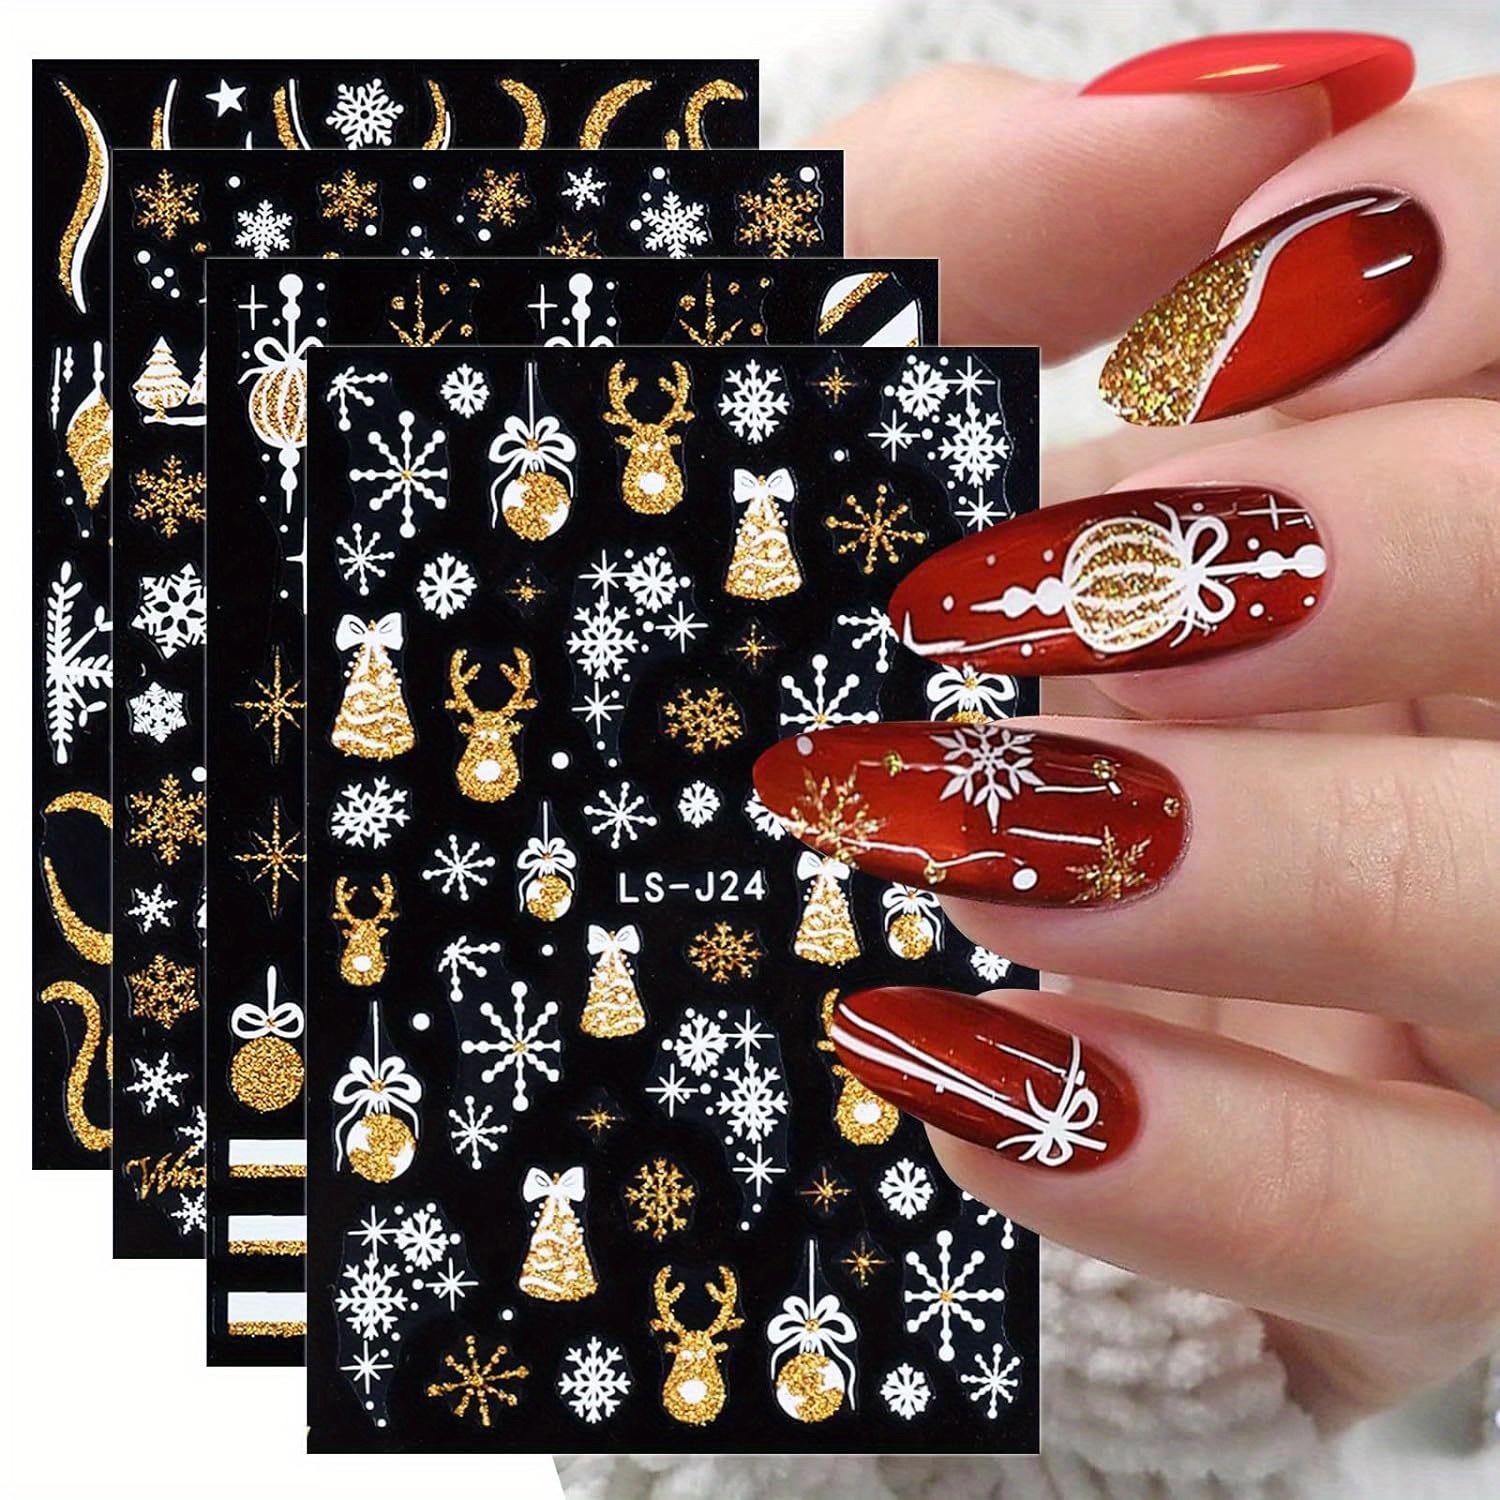 

4 Sheets Christmas Nail Art Stickers Decals Self-adhesive Holiday Golden Snowman Snowflake Xmas Winter Nail Art Supplies